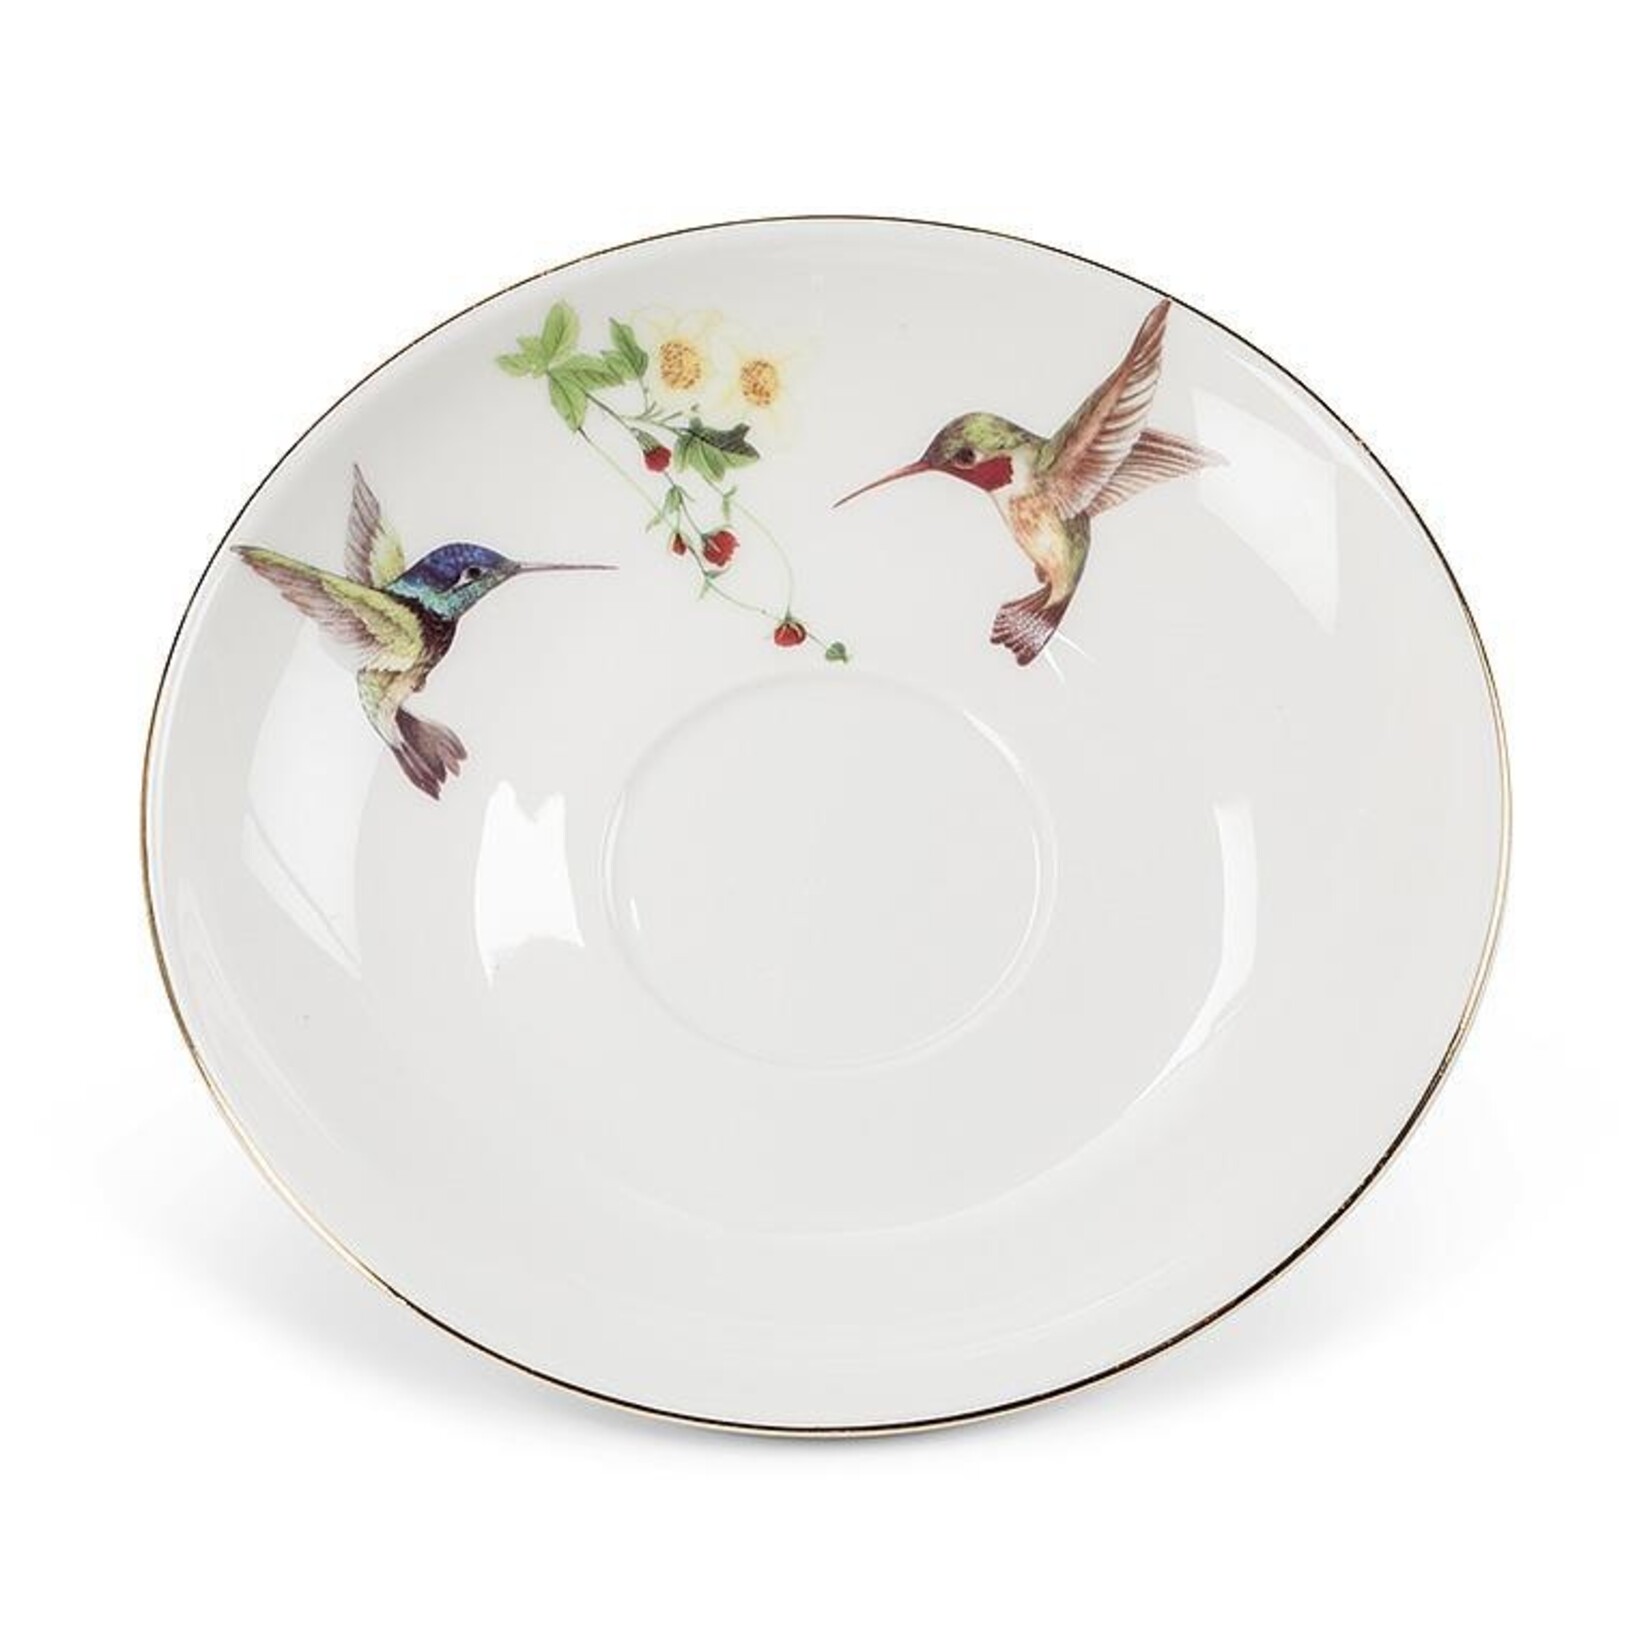 Abbott Tea Cup & Saucer - Hummingbird